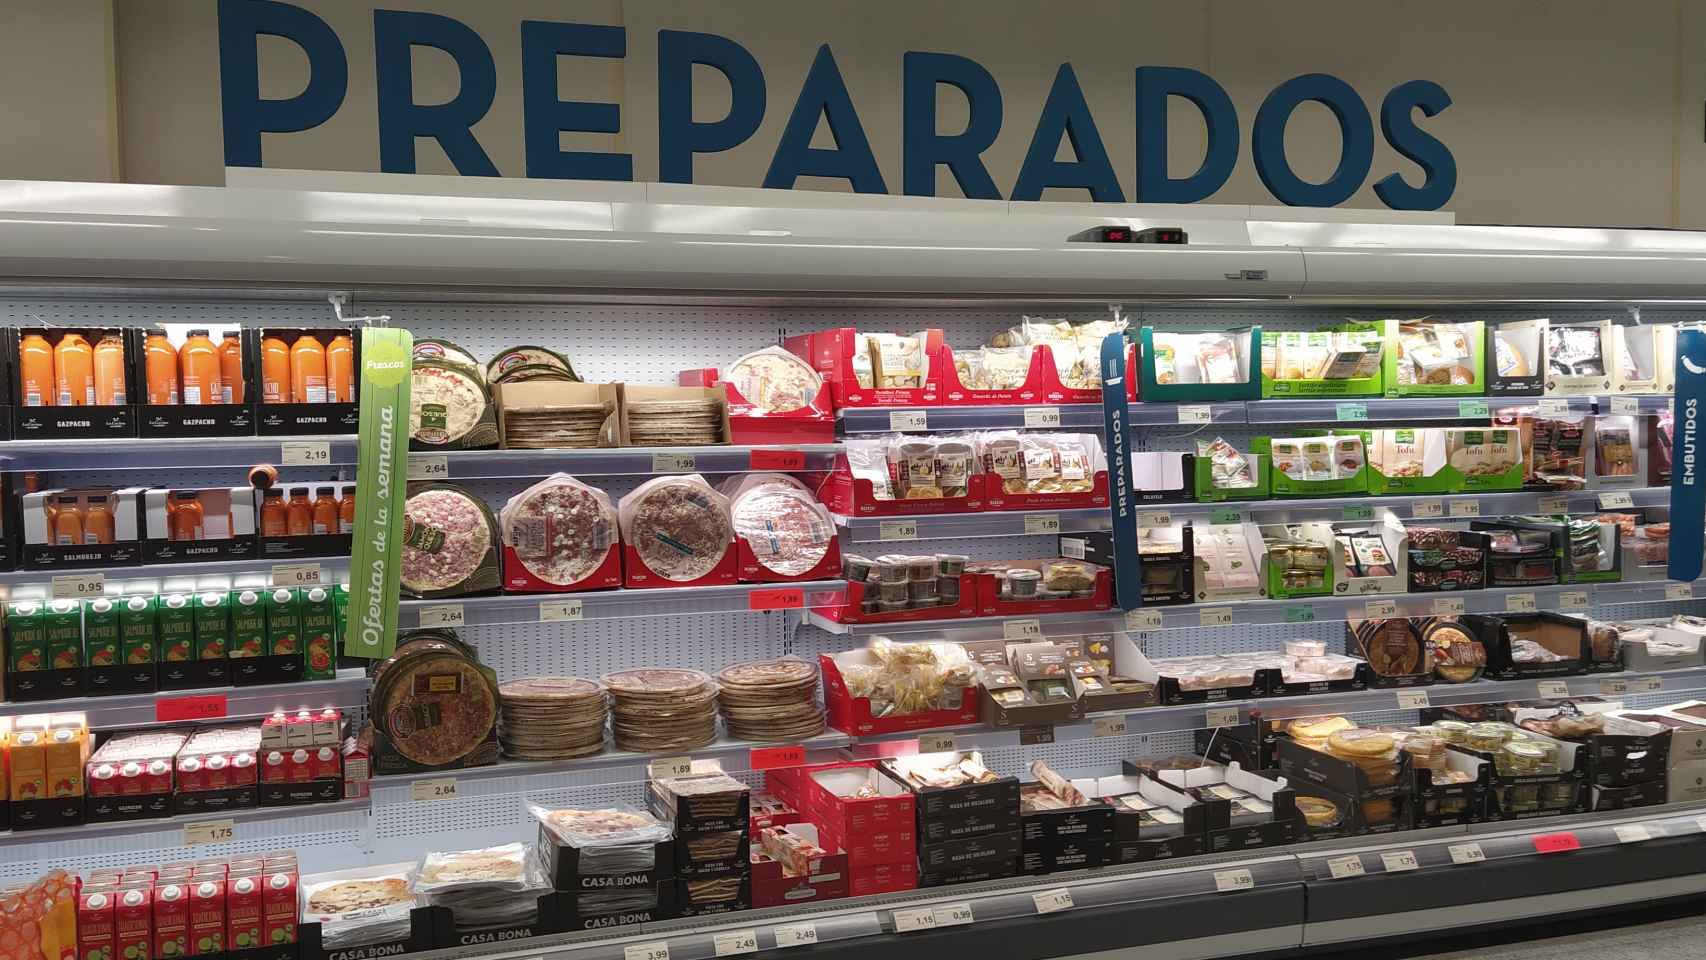 La sección de 'Preparados' del supermercado alemán Aldi, en Majadahonda (Madrid).